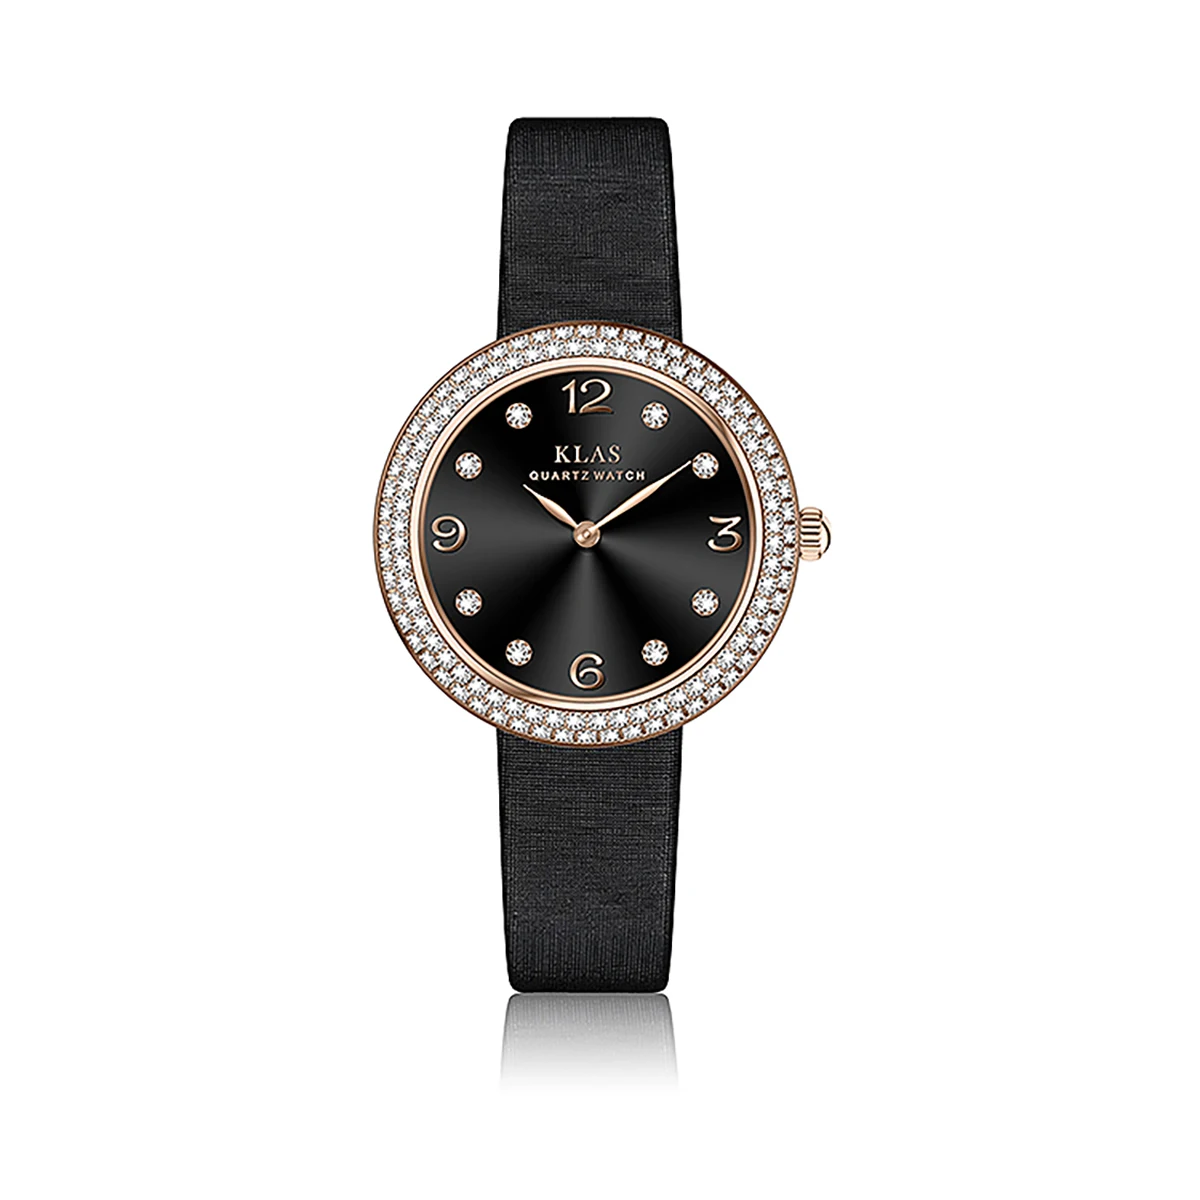 Leisure Romantic Women's Watch Fashion Bracelet Simple Leather Watch trap Watch KLAS Brand relogios femininos de puls